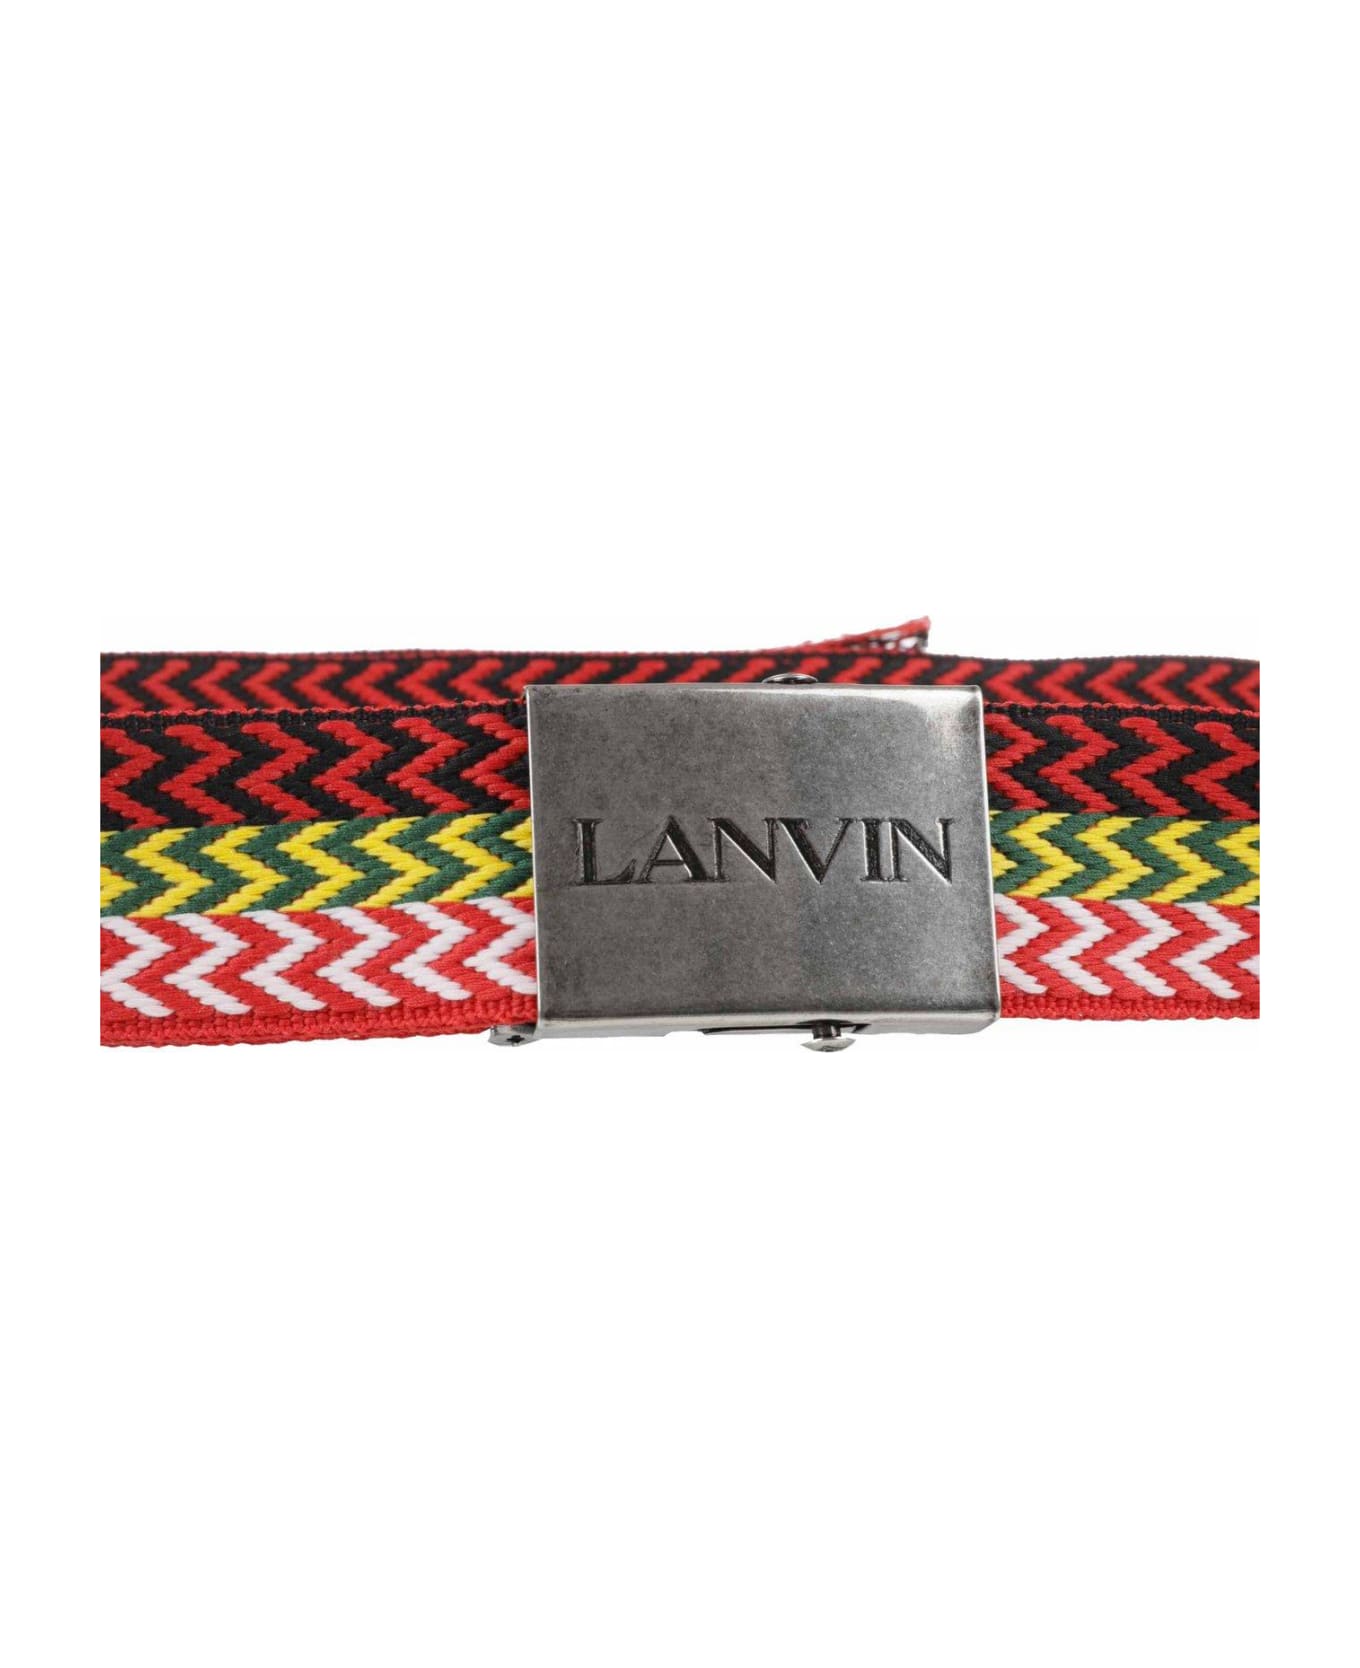 Lanvin Striped Buckle Belt - Nero/multicolour